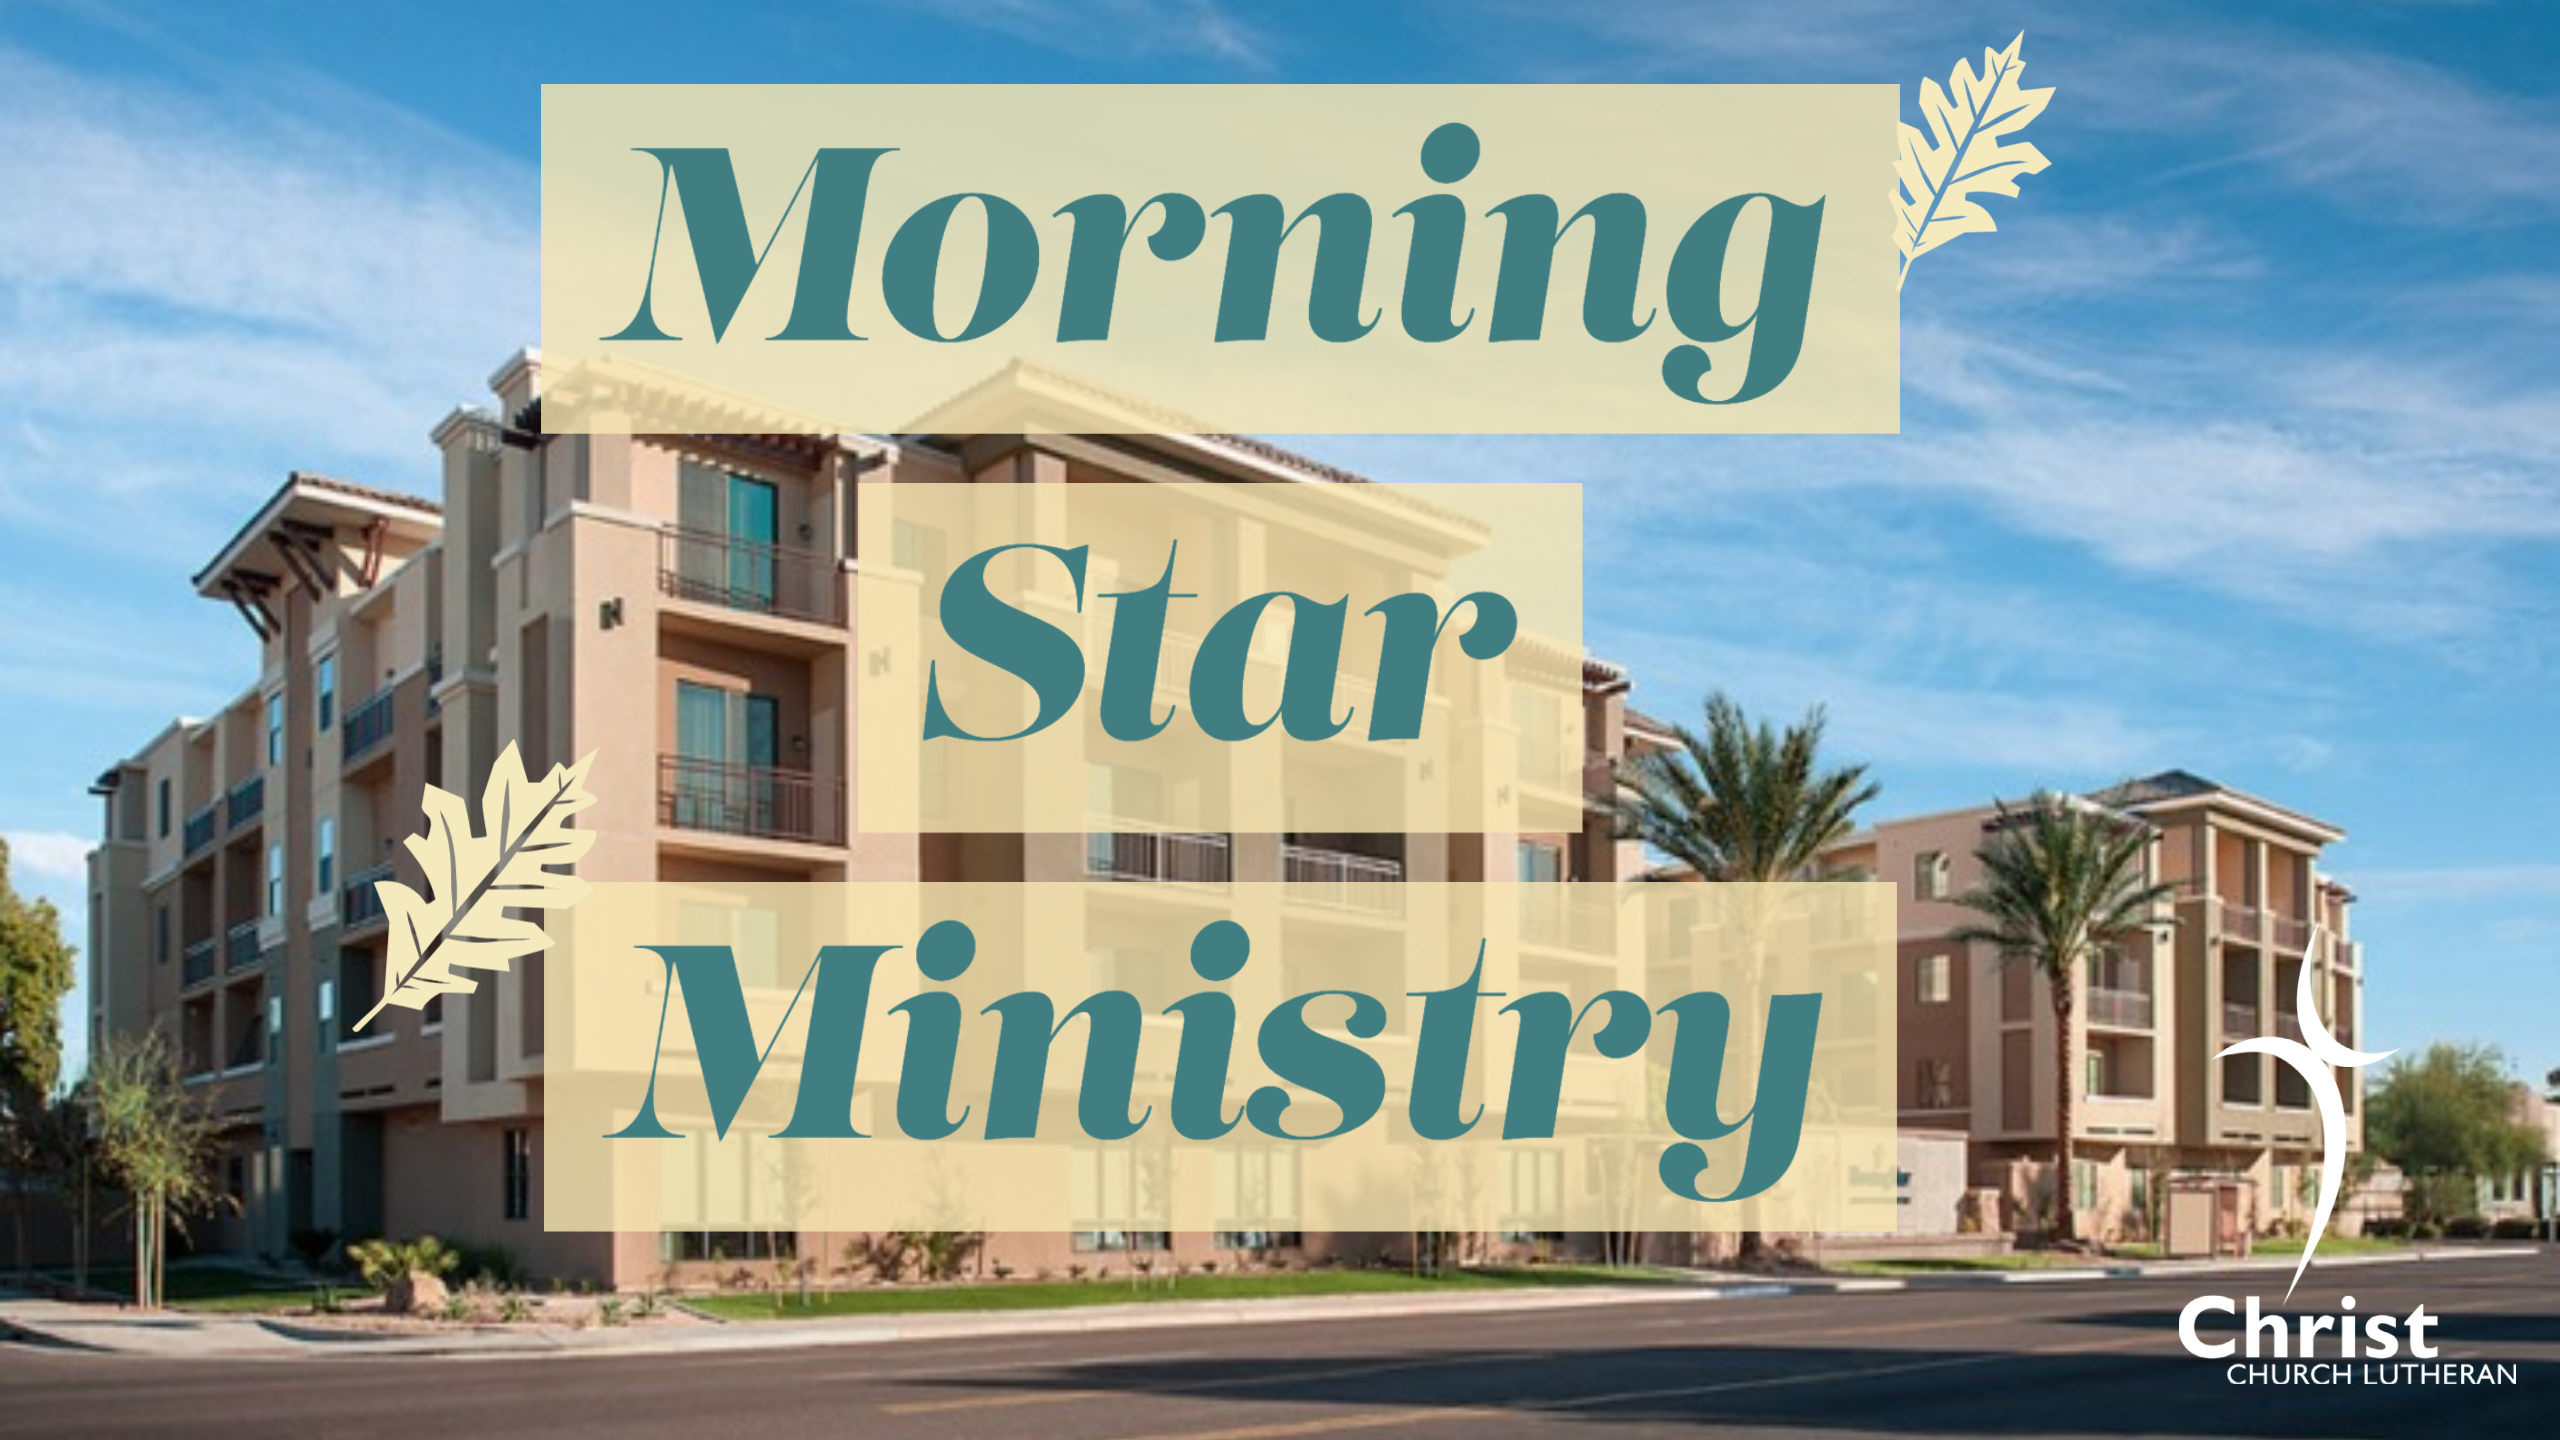 Morning Star Ministry